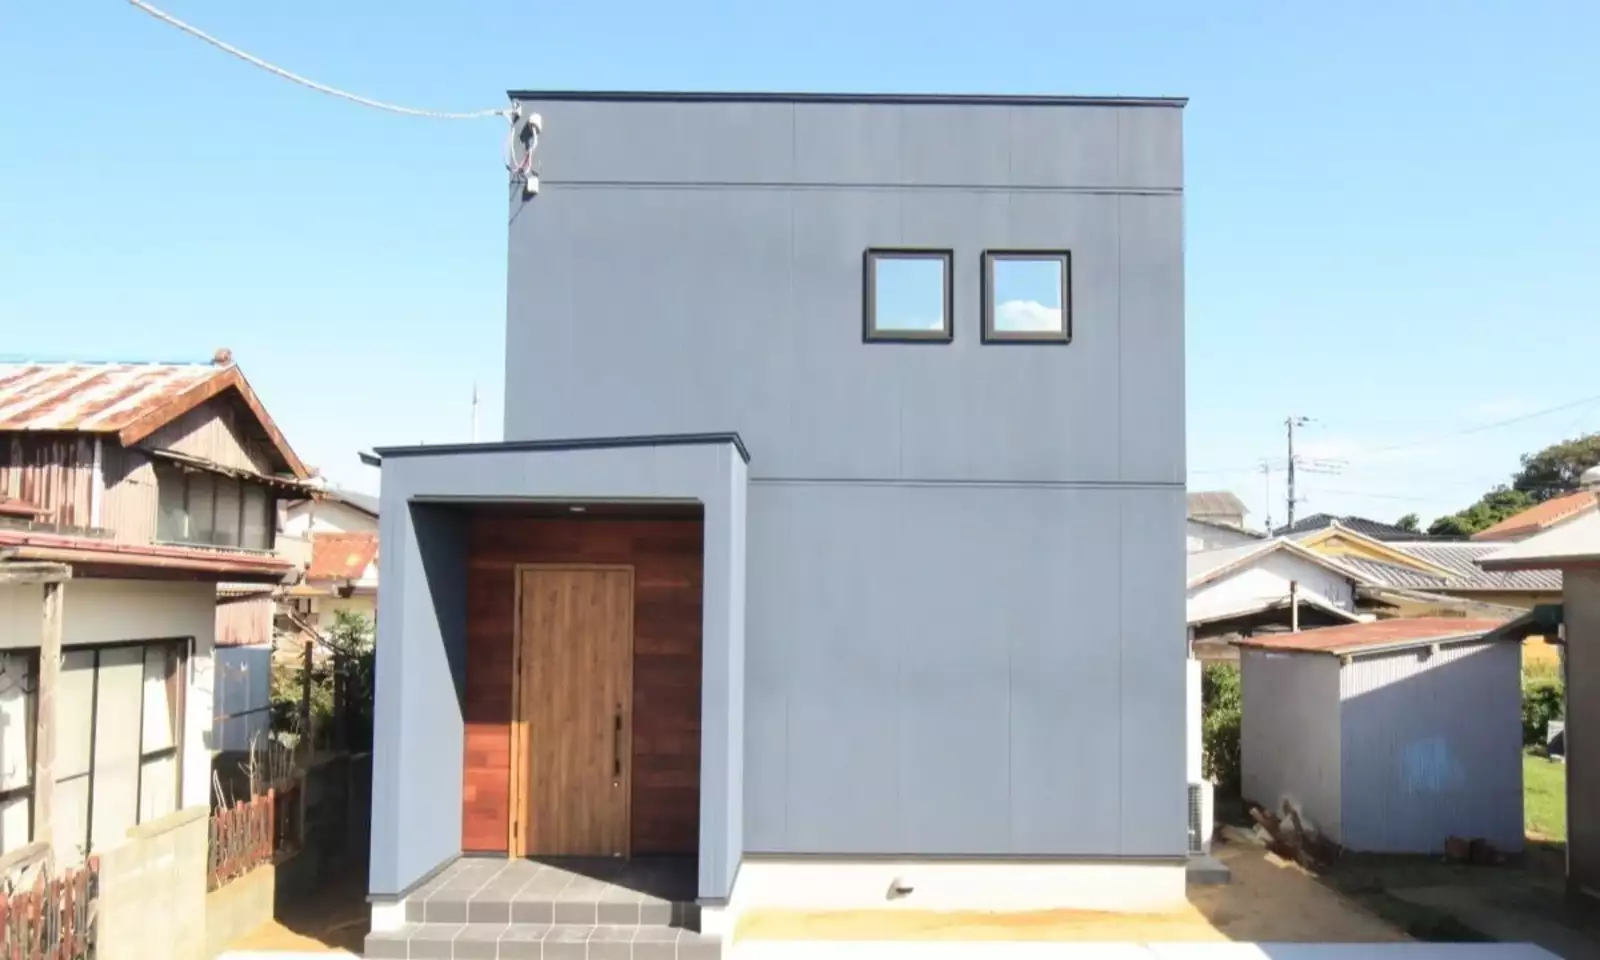 グレー色の吹き付け塗装の外壁とレッドシダー張りの家